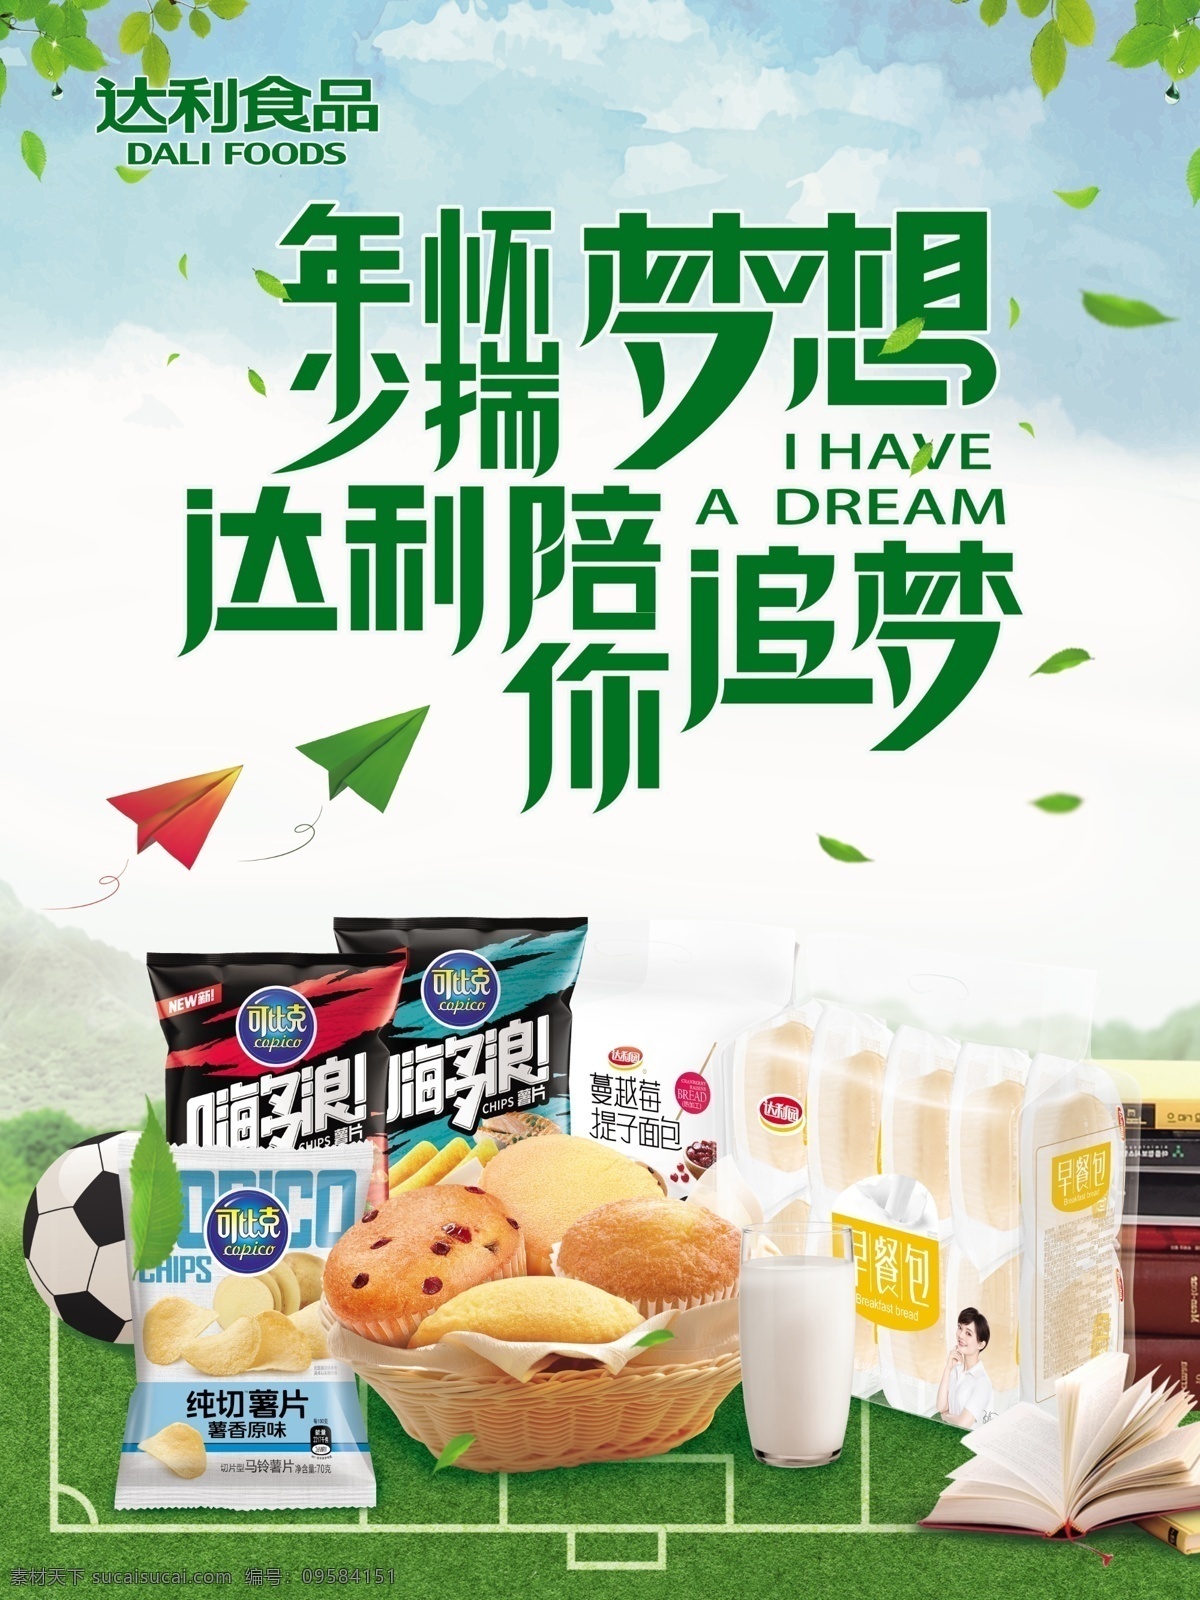 达利食品 达利园广告 沙琪玛 蛋黄派 达利标志 广告设计模板 嗨多浪 纯切薯片 蔓越莓 提子面包 早餐包